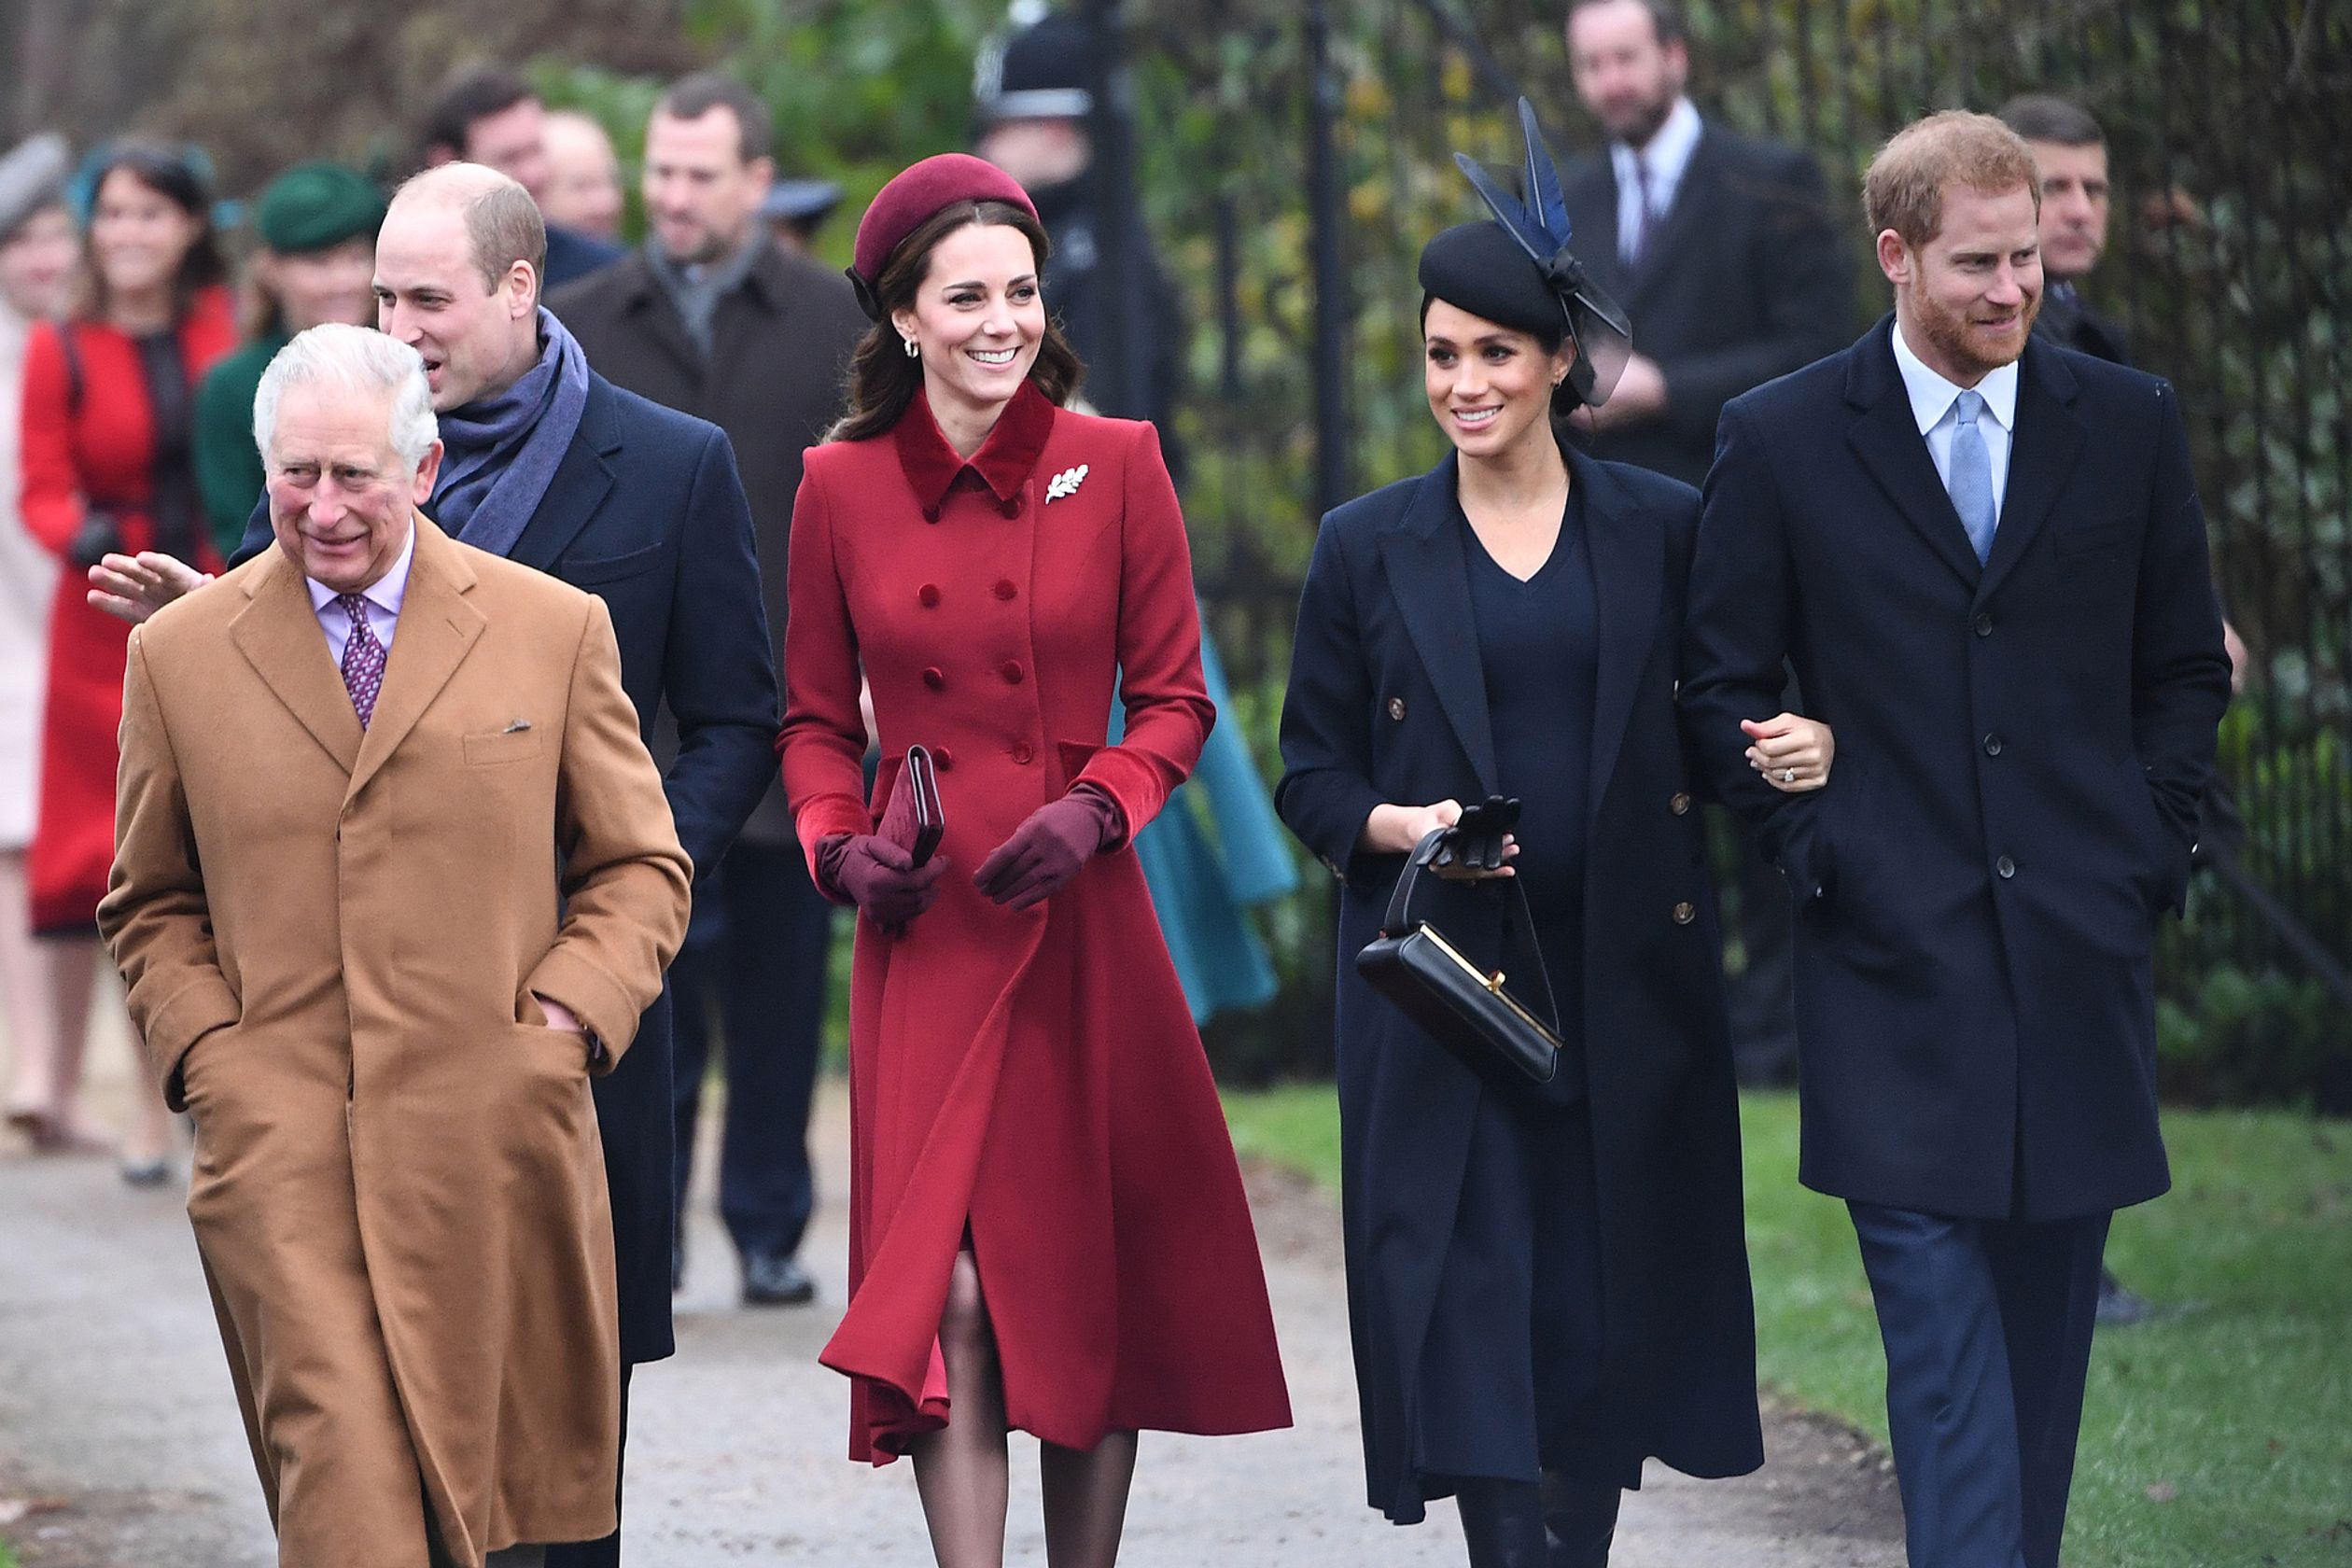 Catherine arriveert met haar man William, prins Charles, Meghan en Harry bij de traditionele